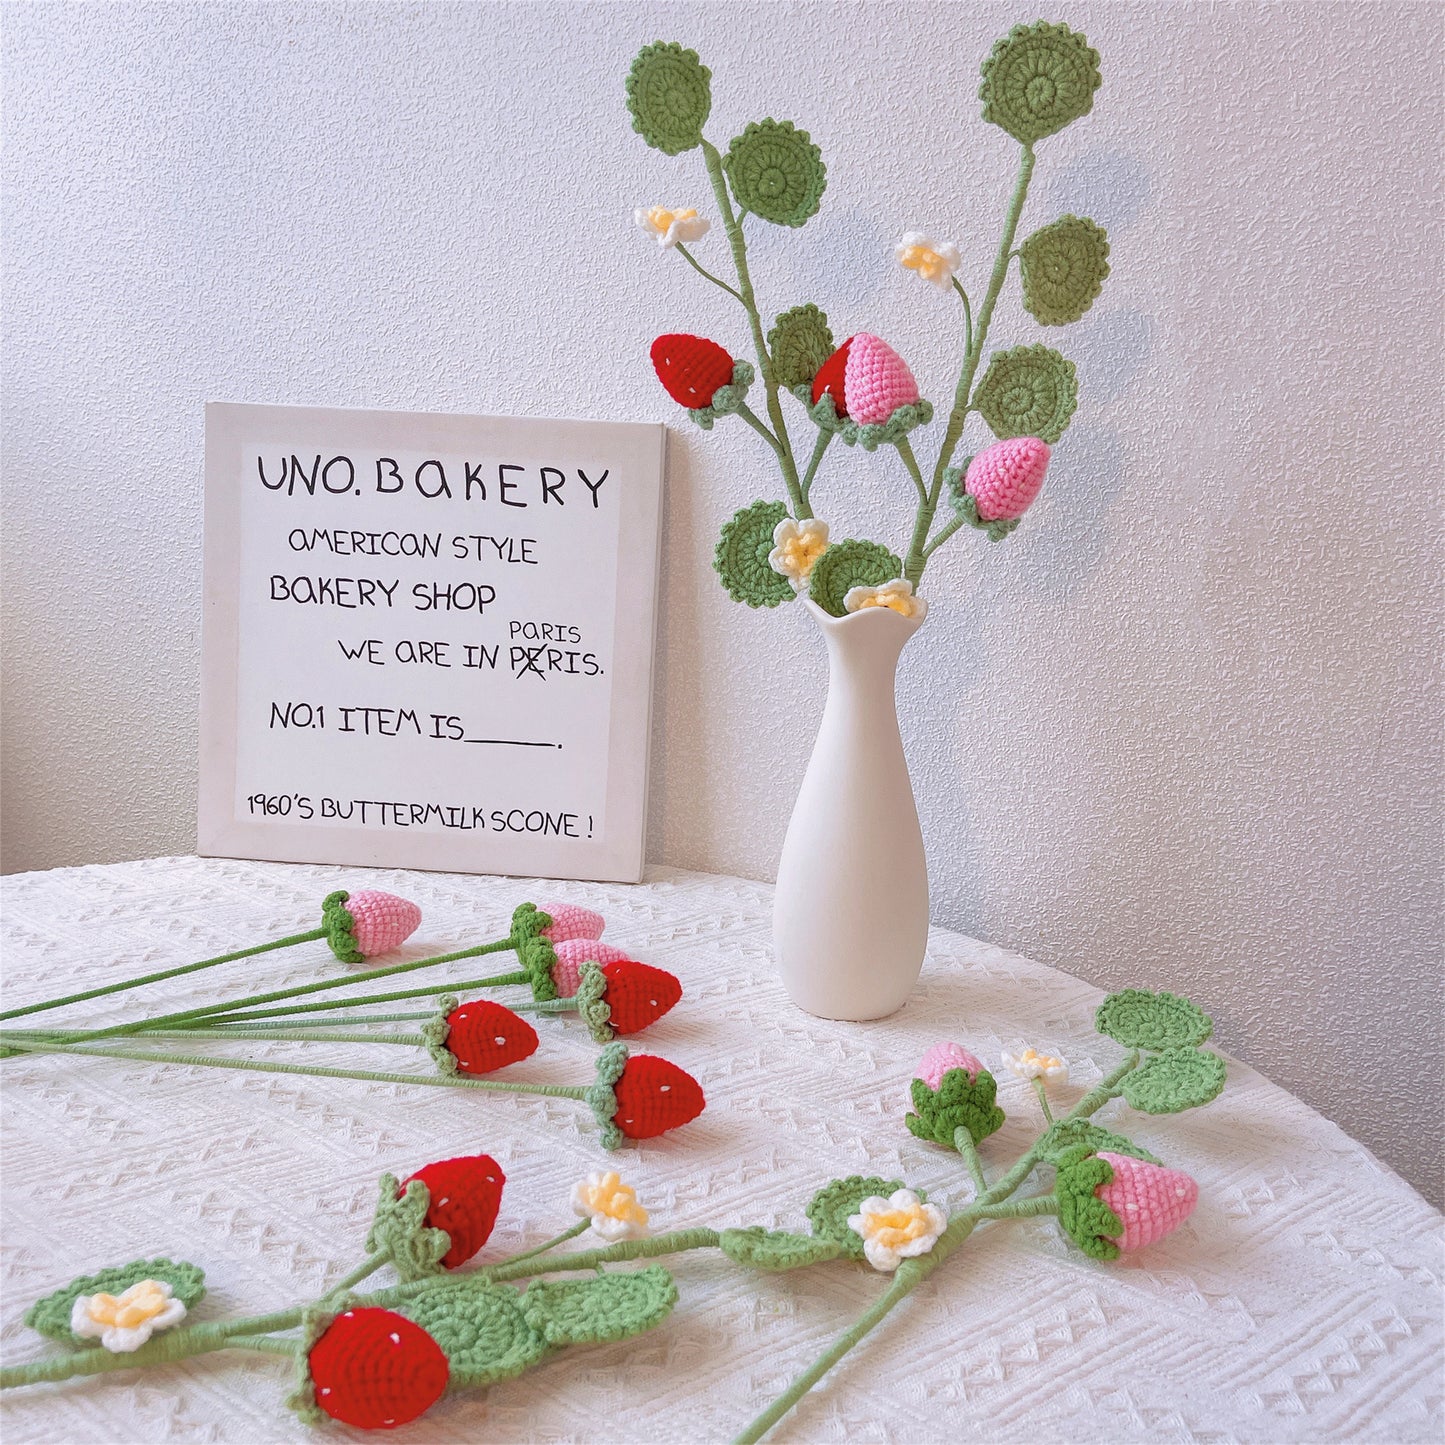 Süße Erdbeerfelder: Handgefertigter gehäkelter Erdbeerpfahl für eine bezaubernde Gartendekoration“